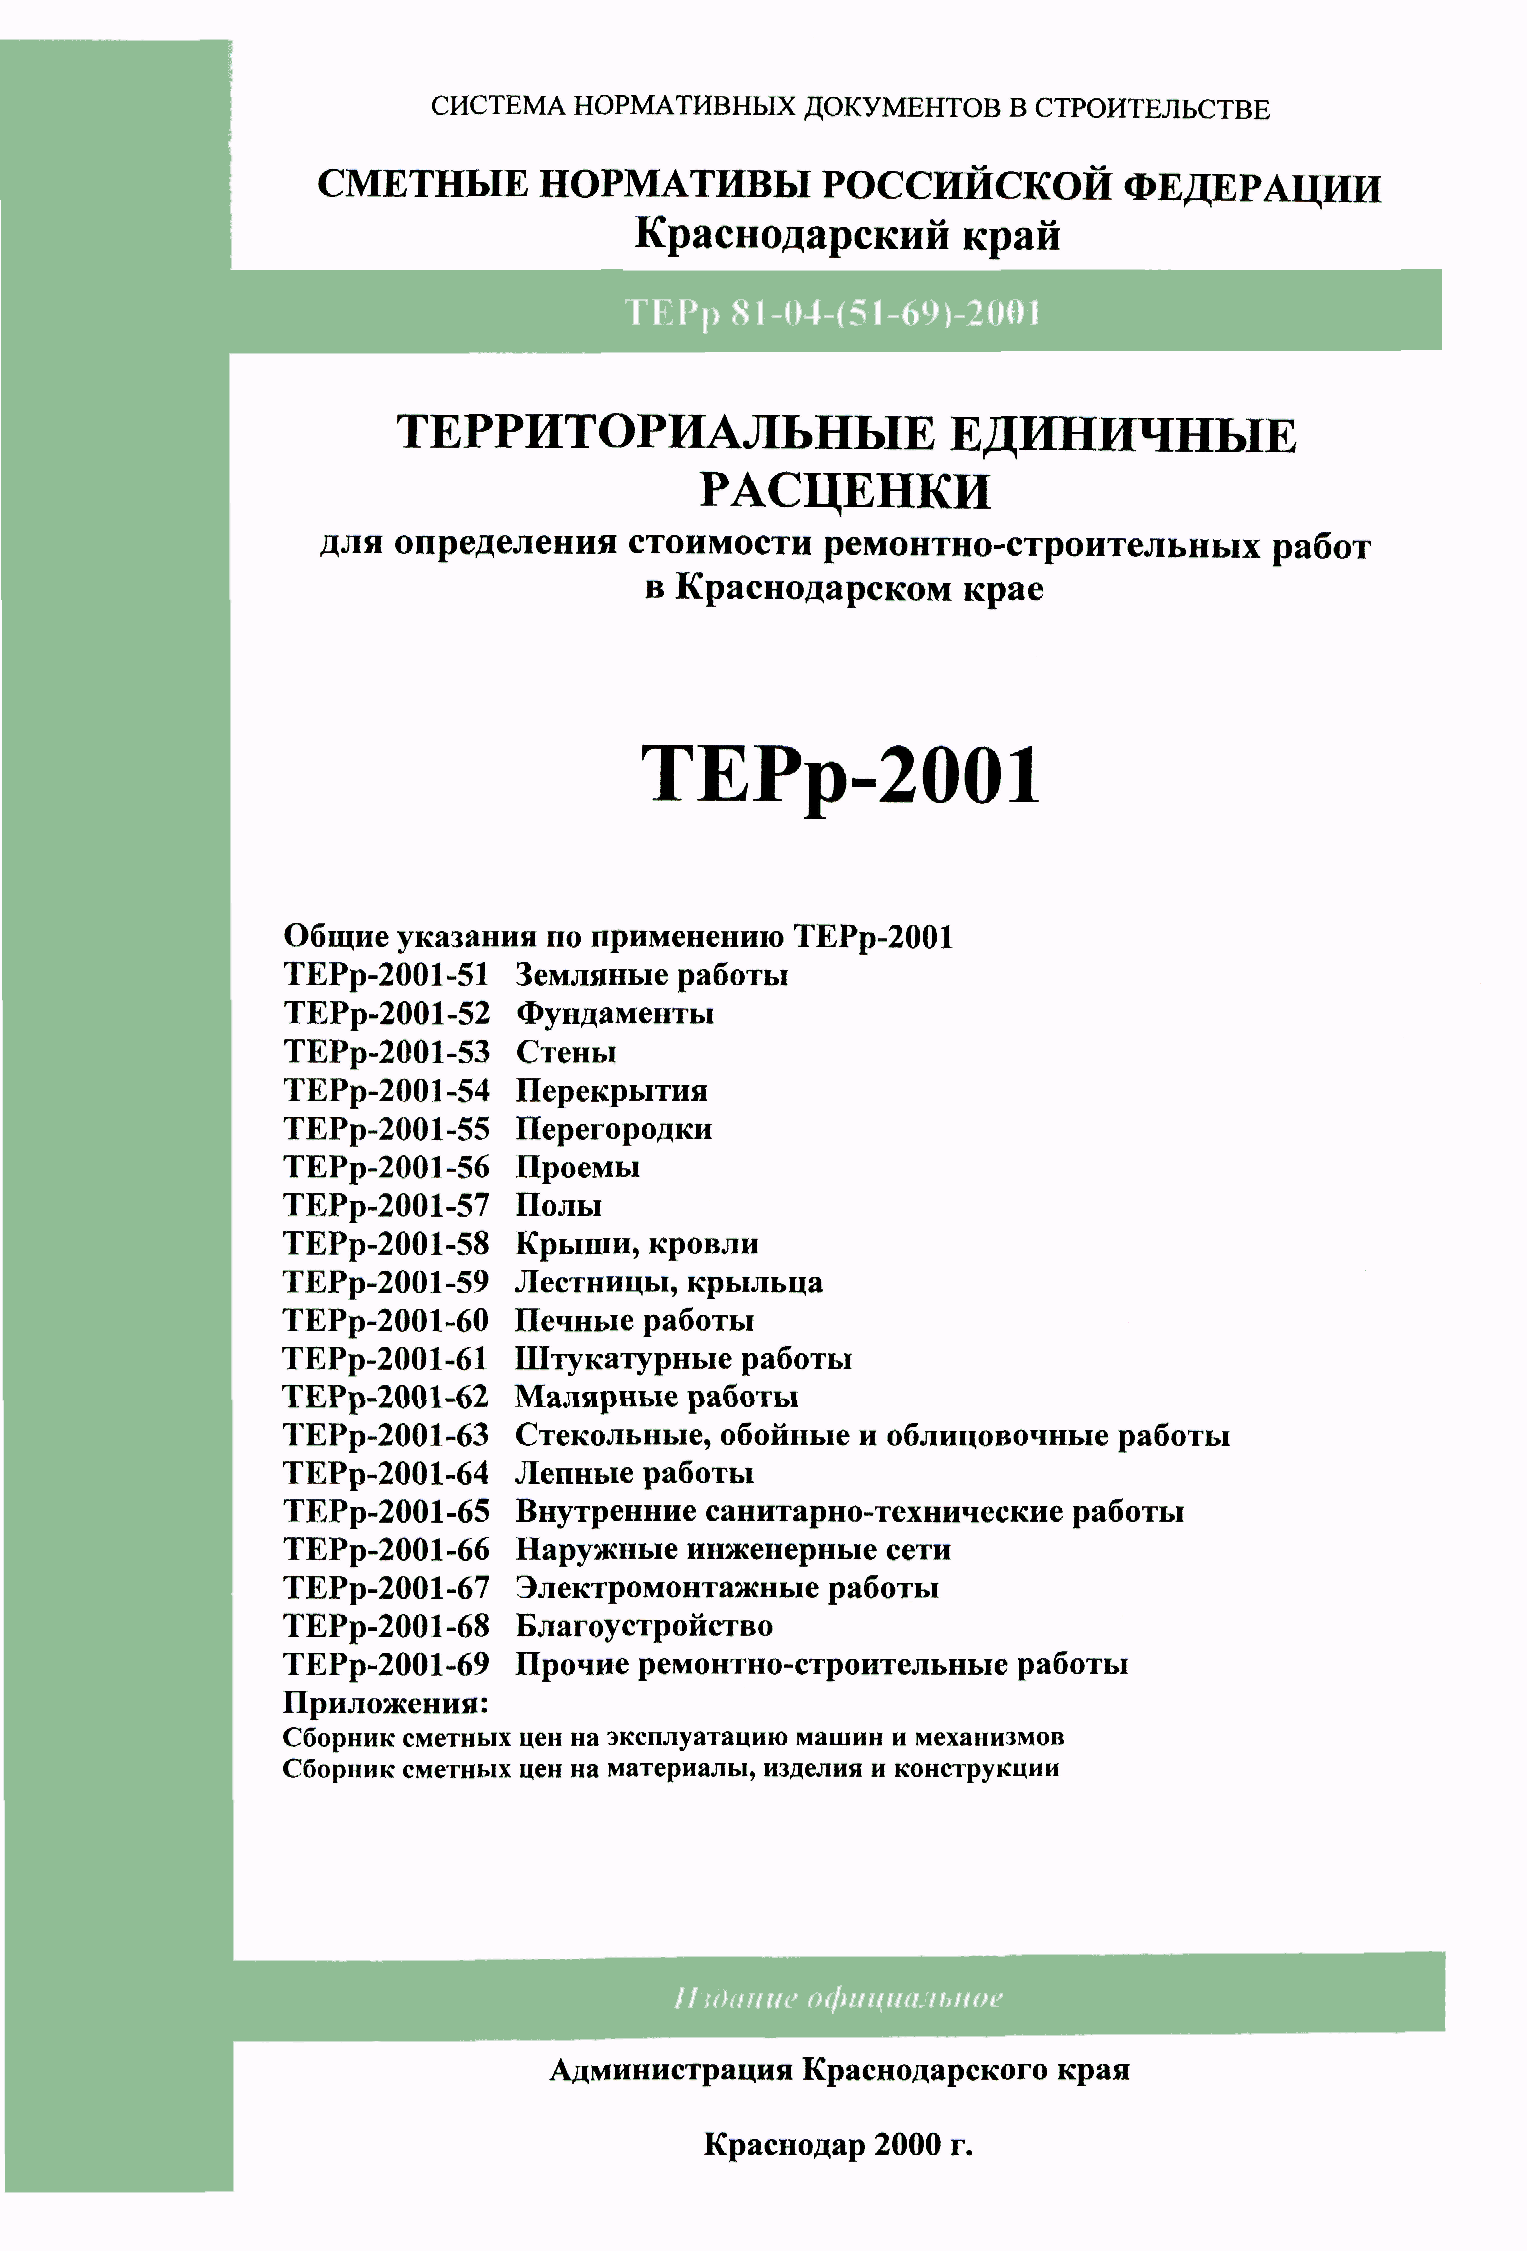 ТЕРр Краснодарского края 2001-59